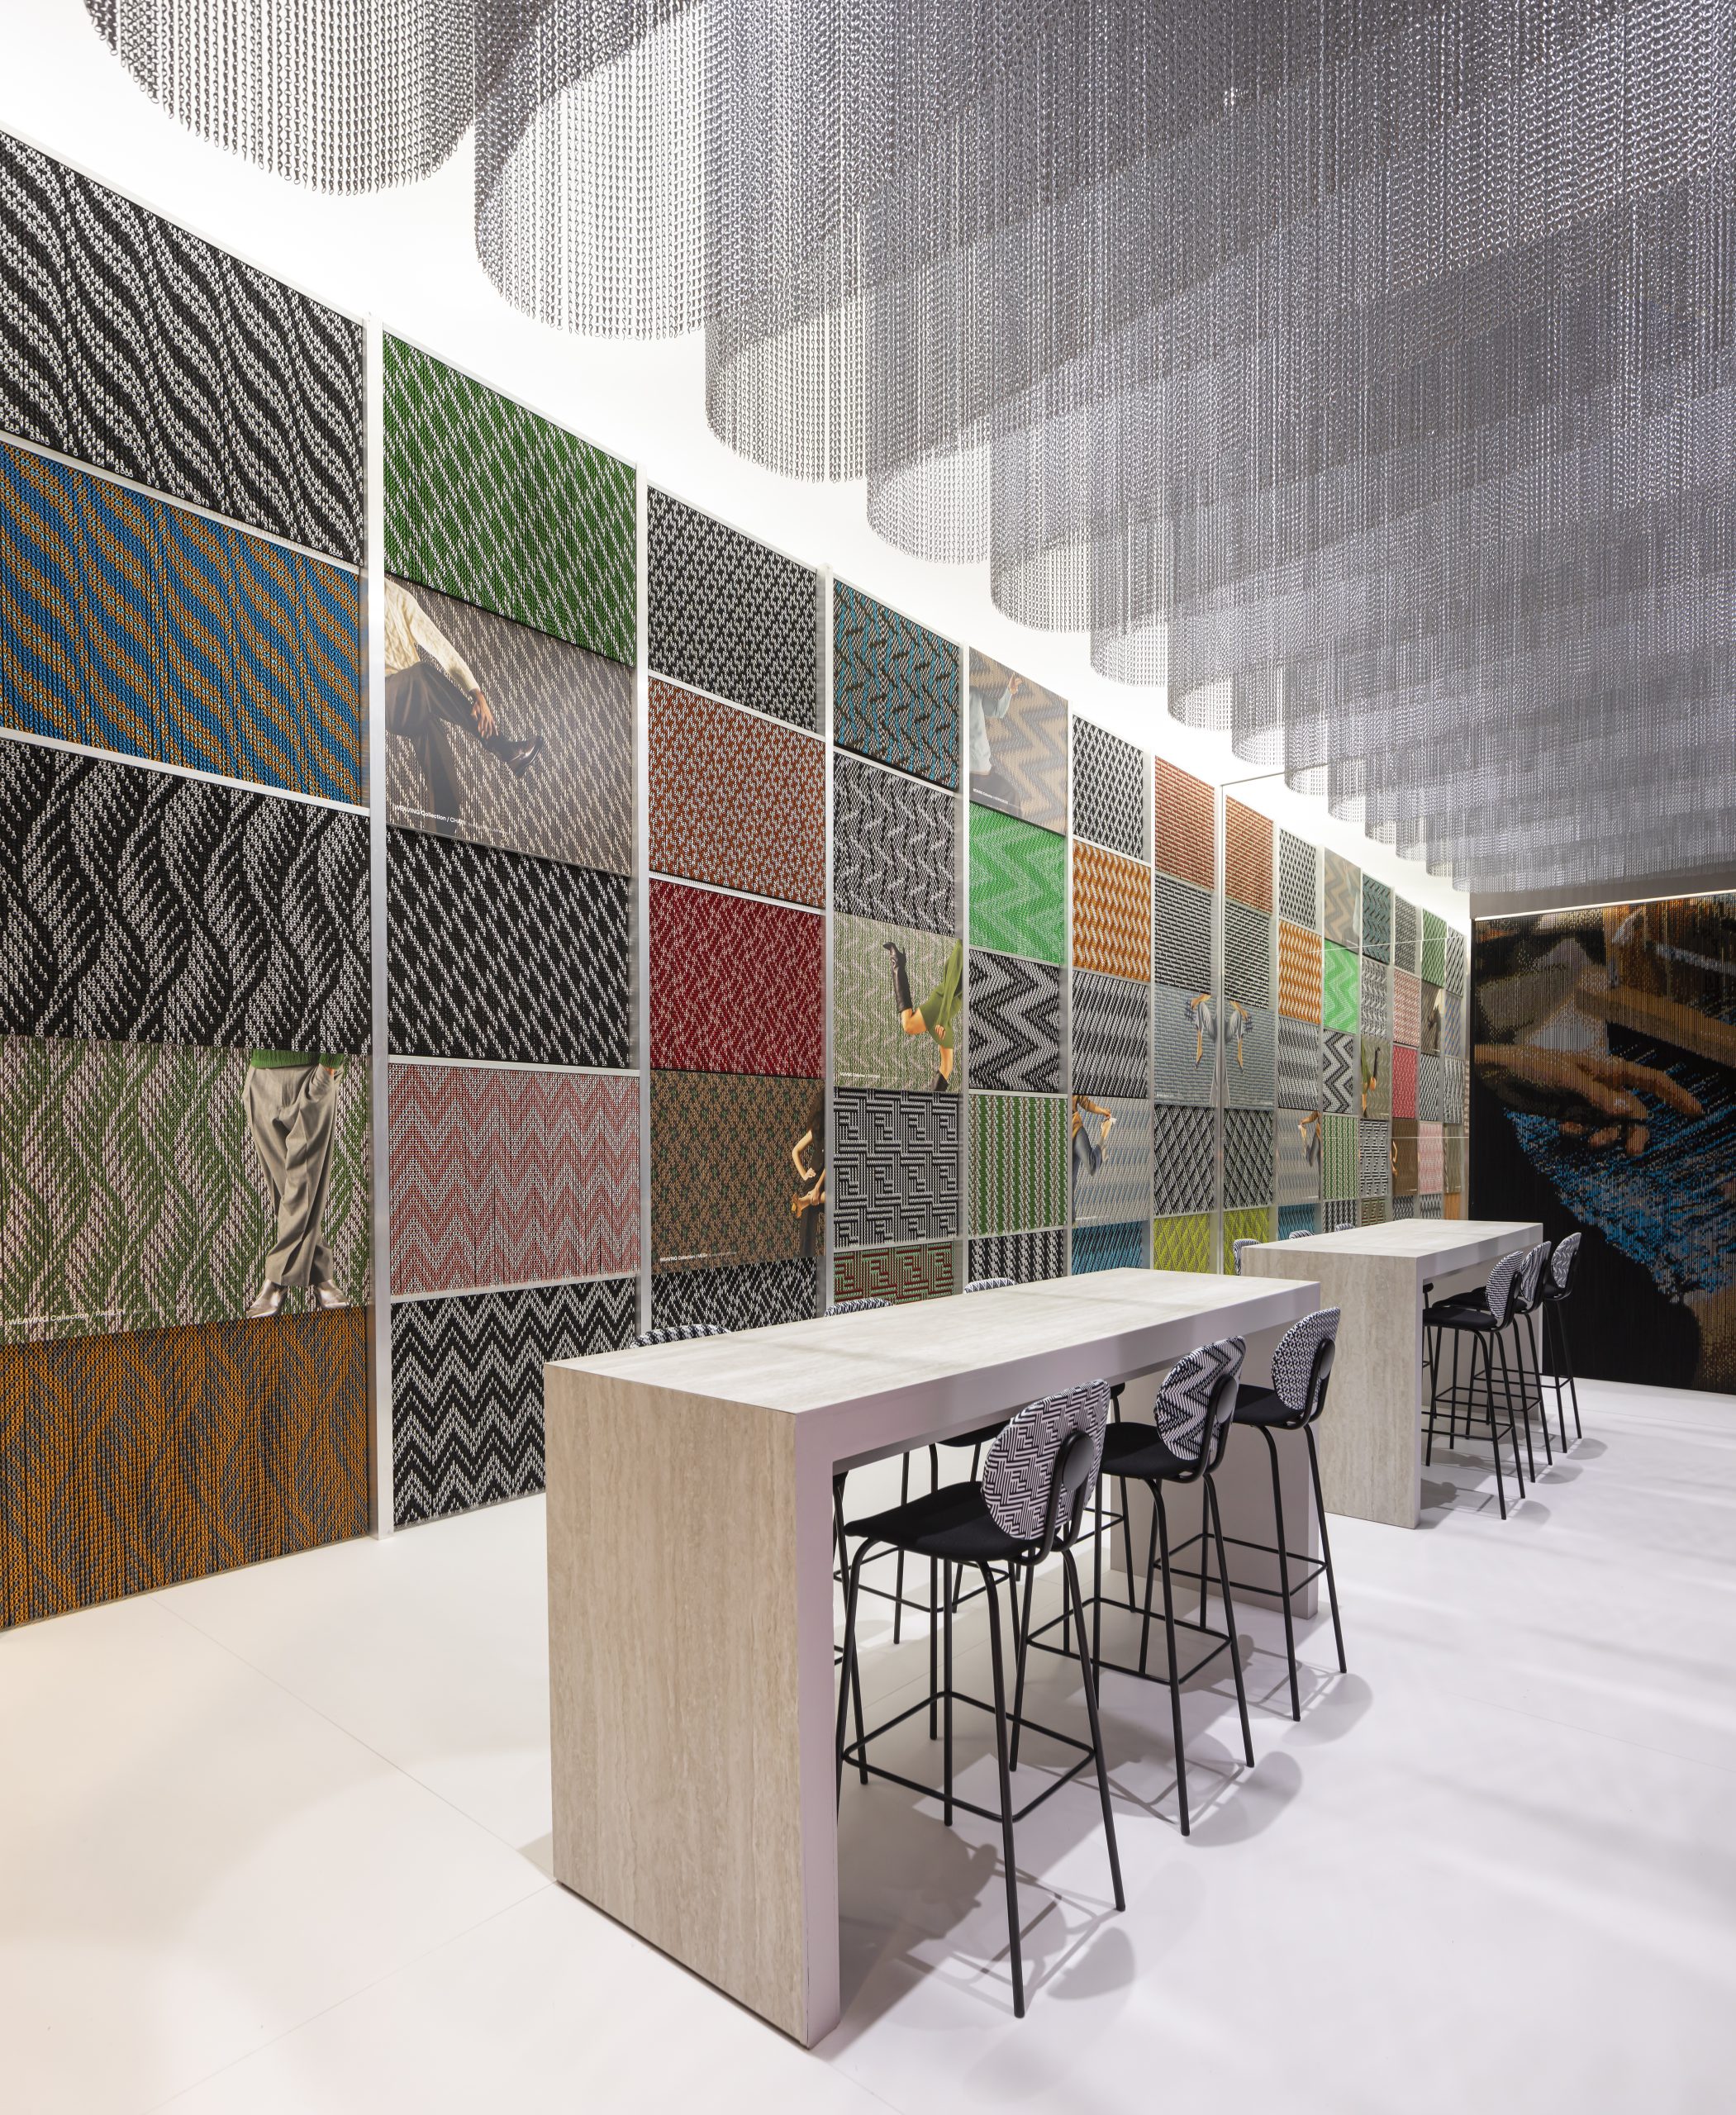 Kriskadecor presenta su nueva colección ‘Weaving’ en el Salone del Mobile de Milán